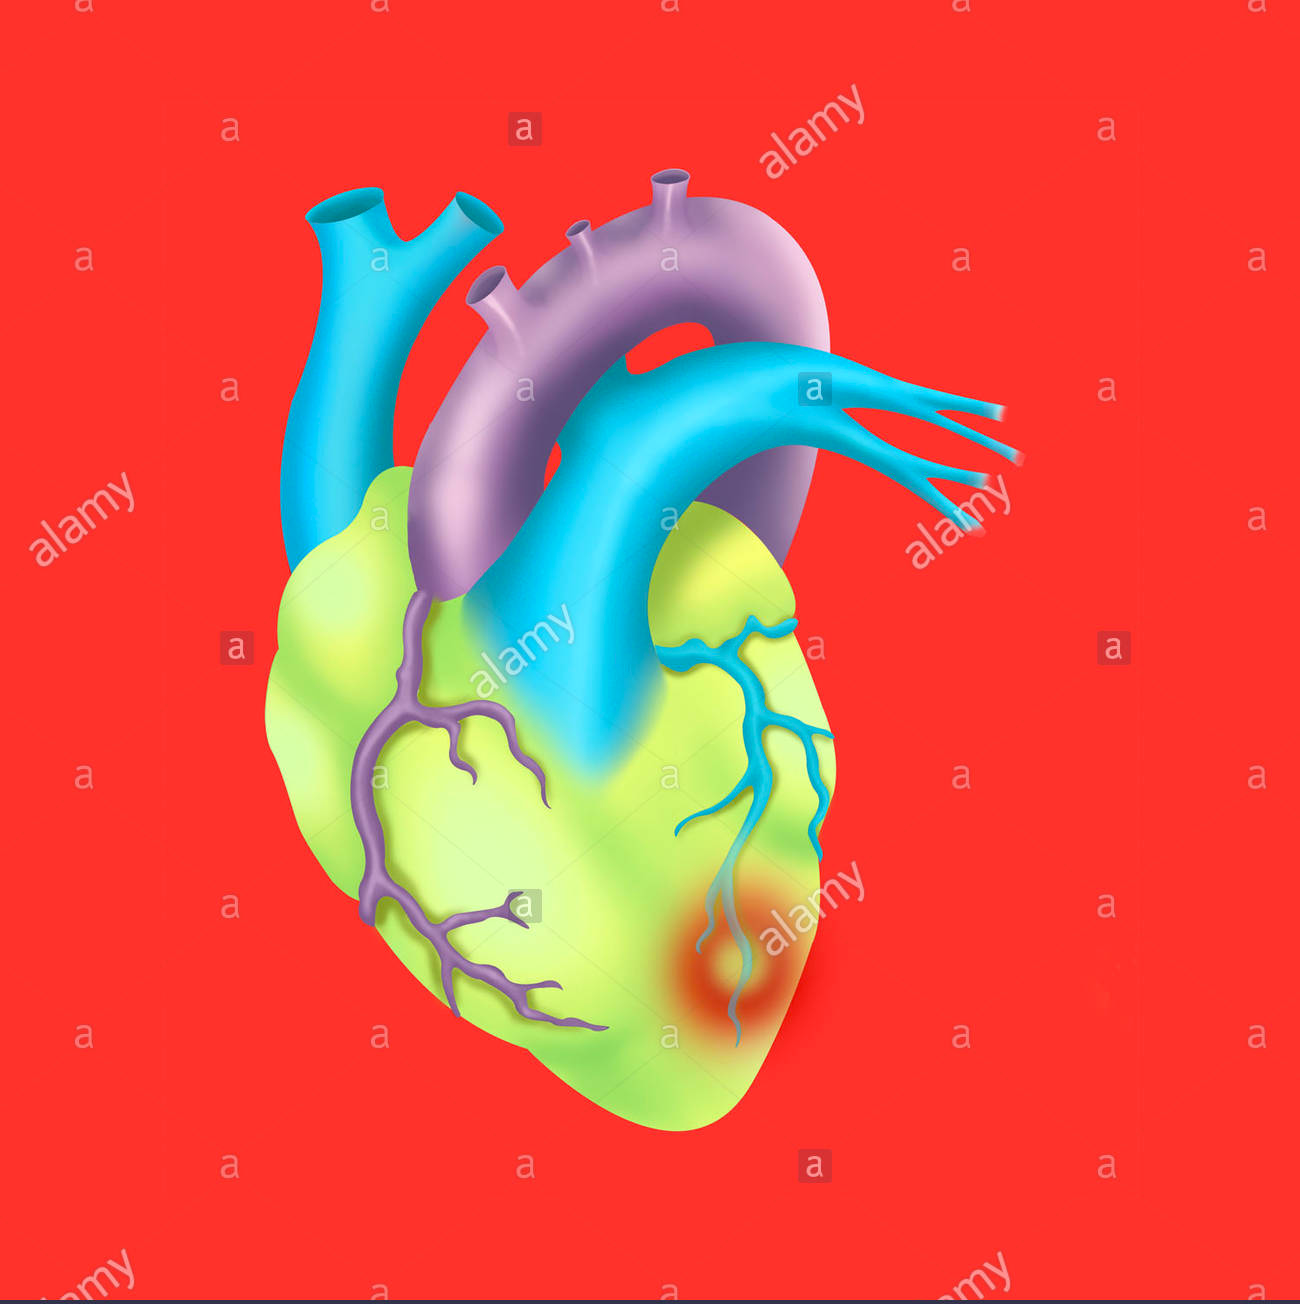 cardiac insufficiency